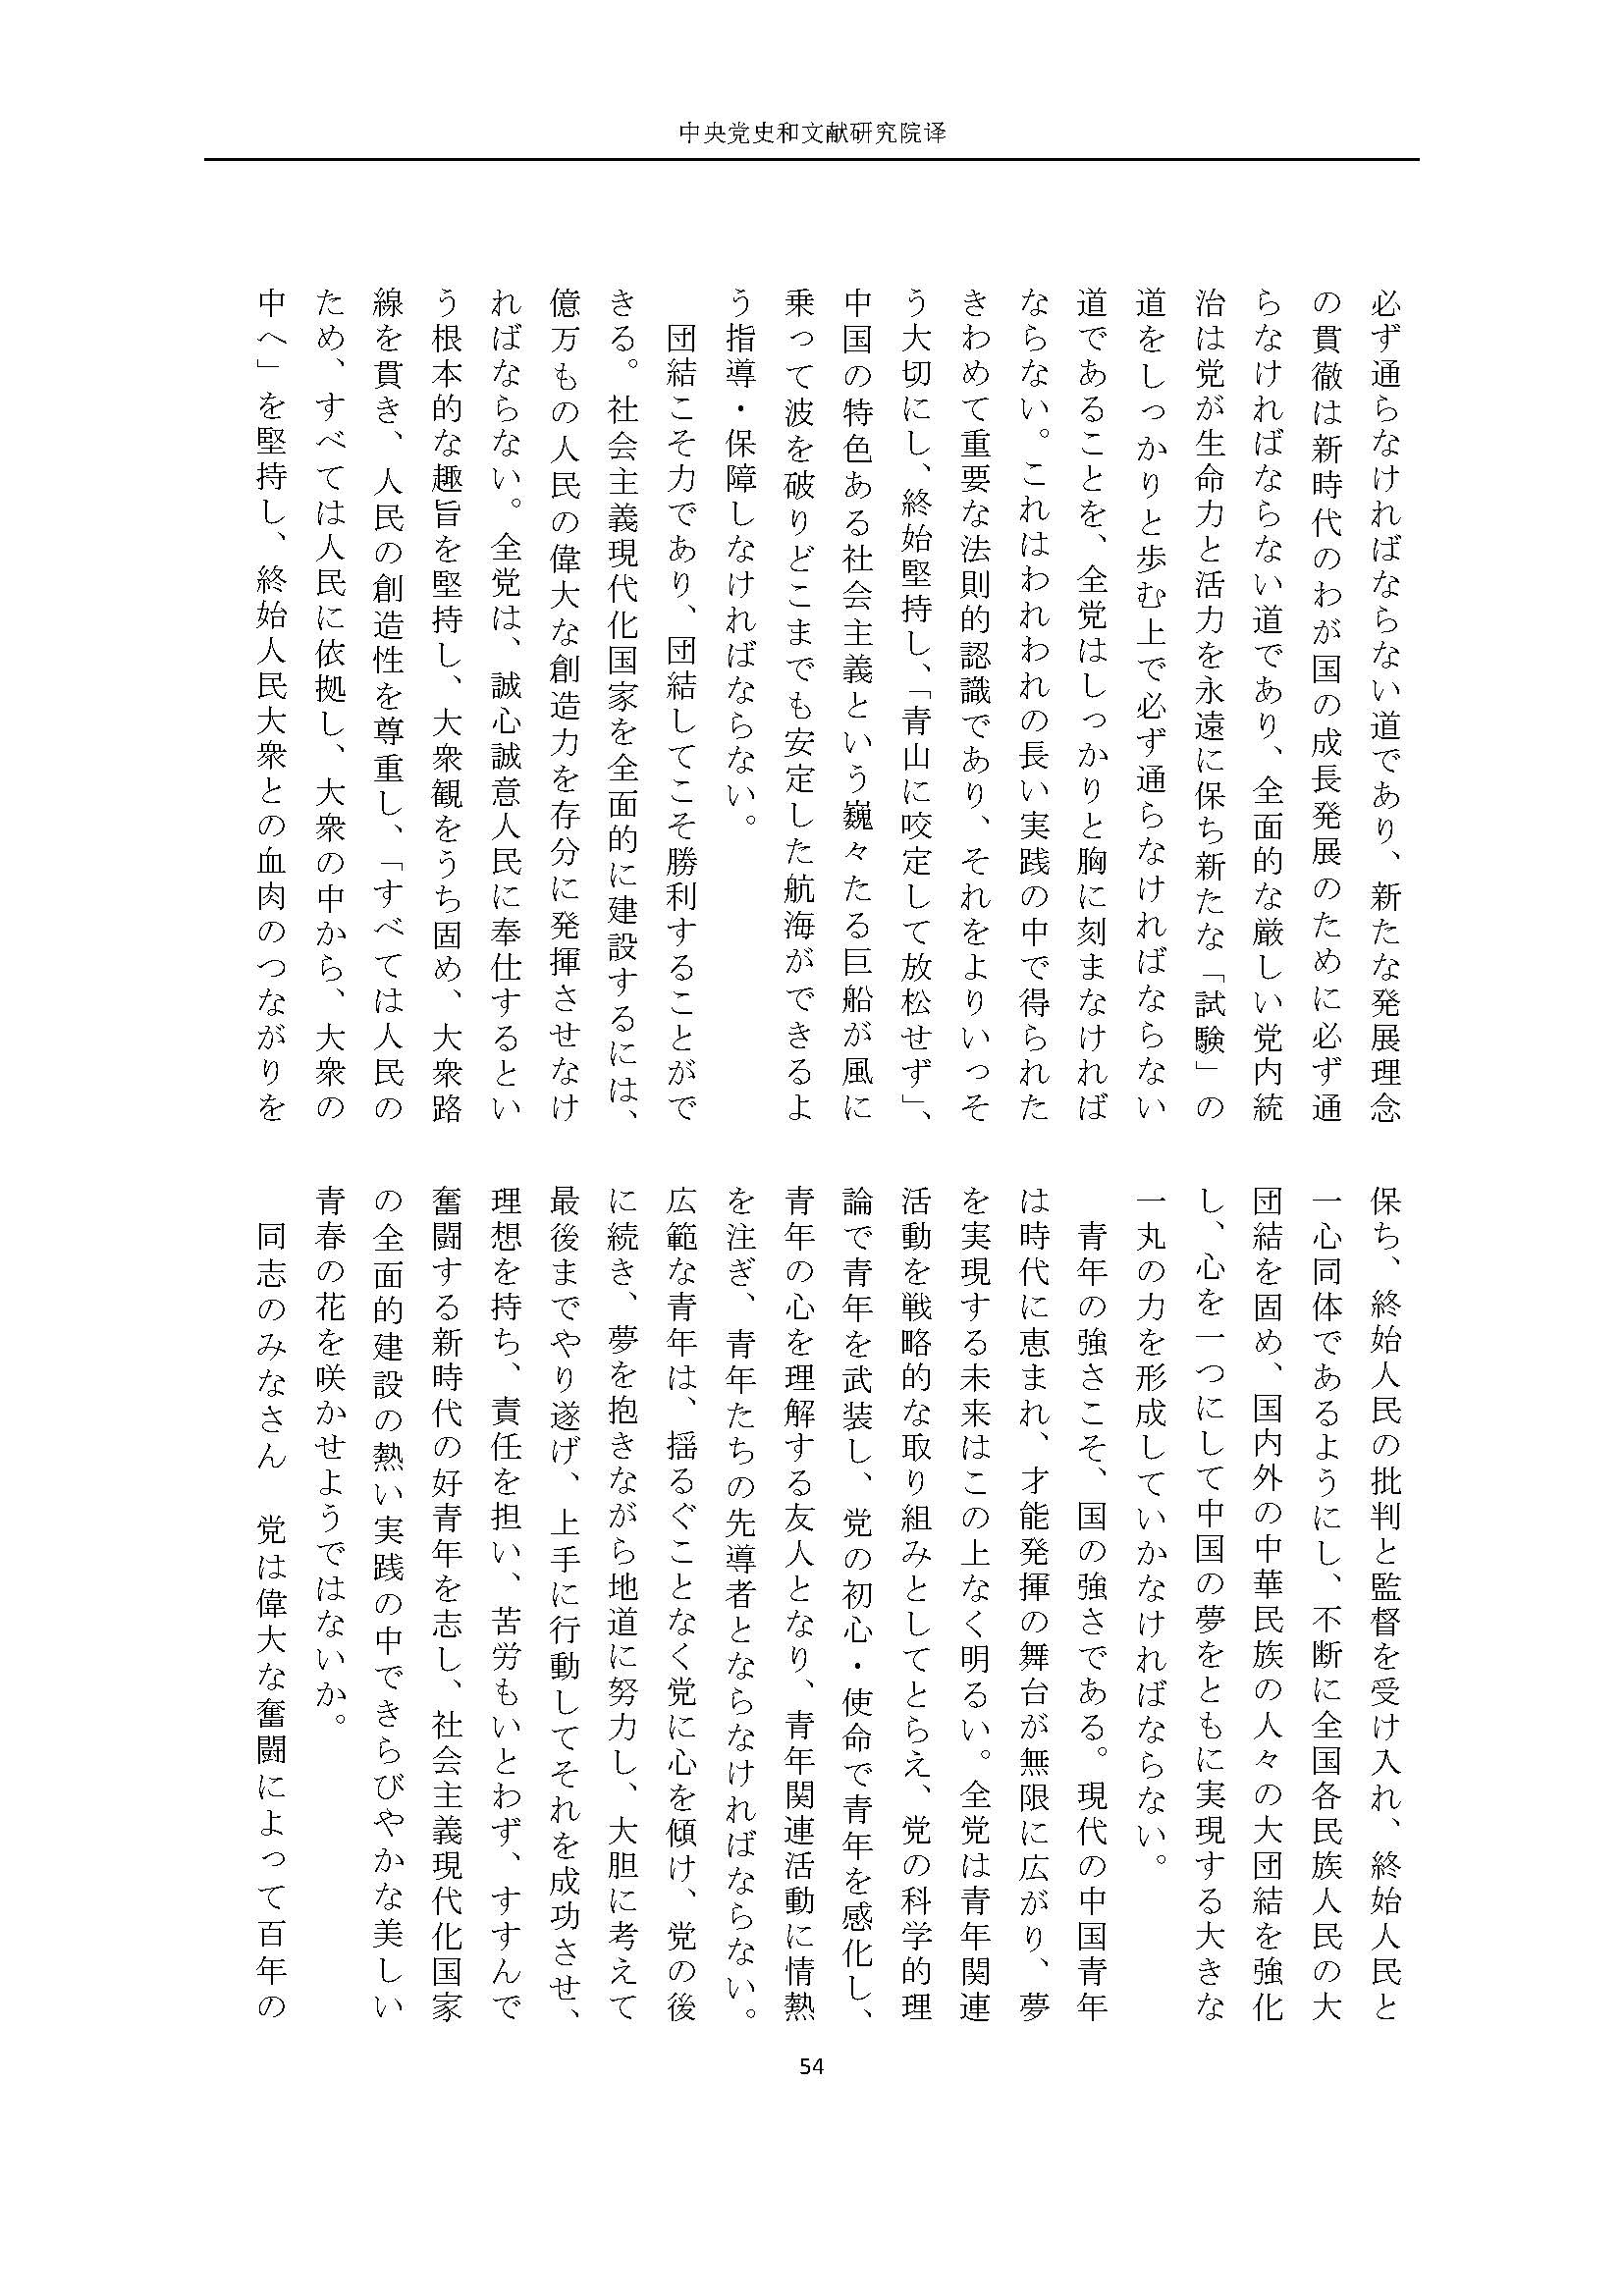 二十大报告（日文全文）_页面_55